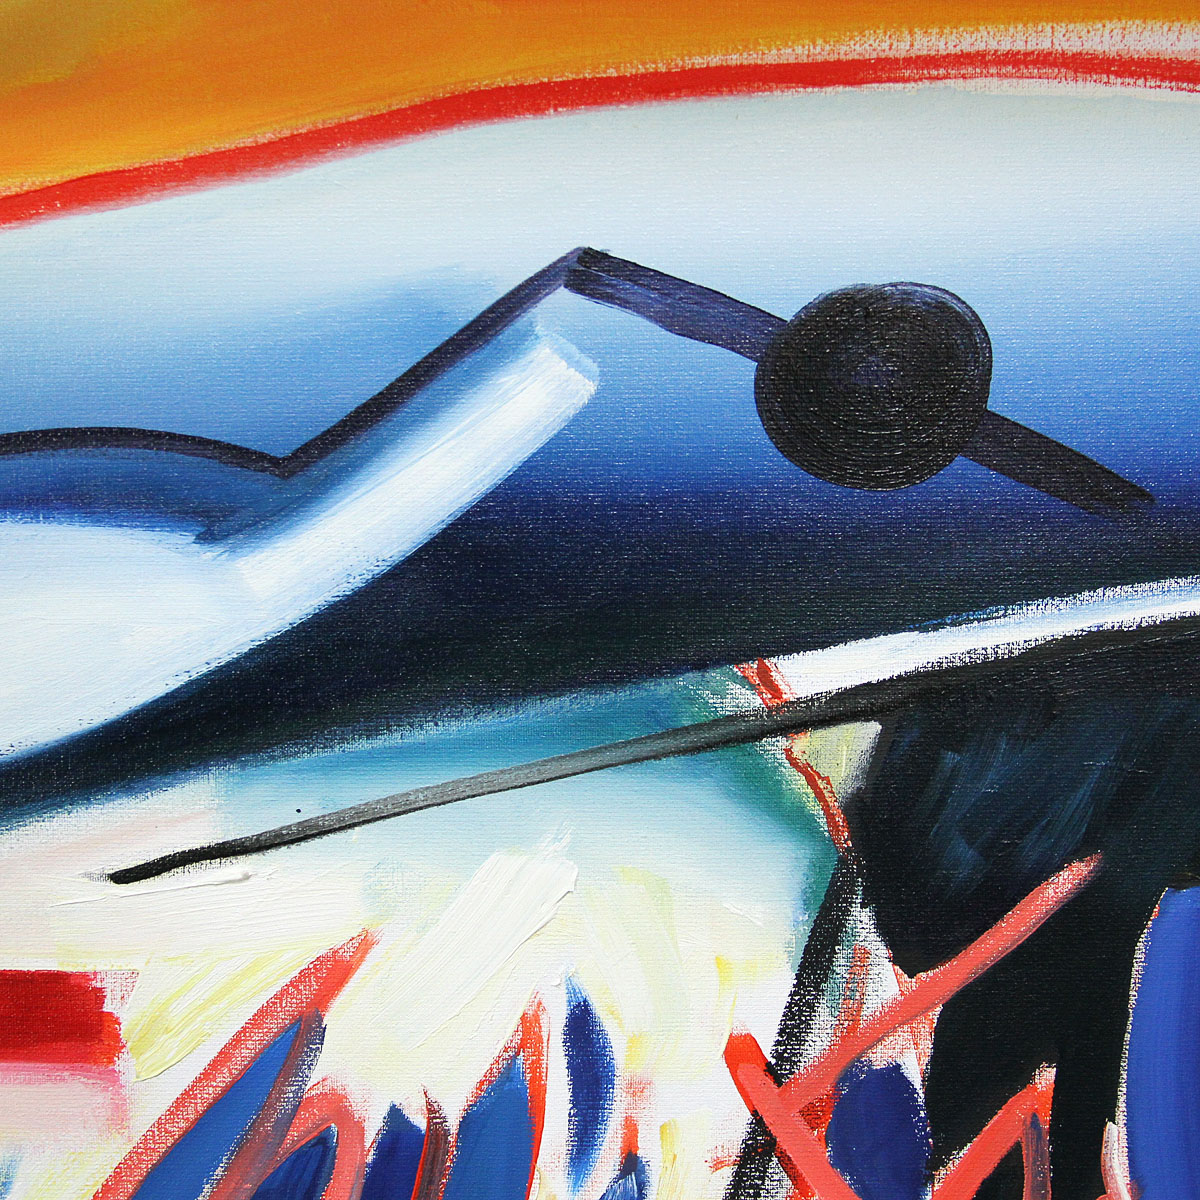 M. Cieśla: "Punta Ala Italien in abstrakten Formen", Original/Unikat, Expressionistisches Ölgemälde